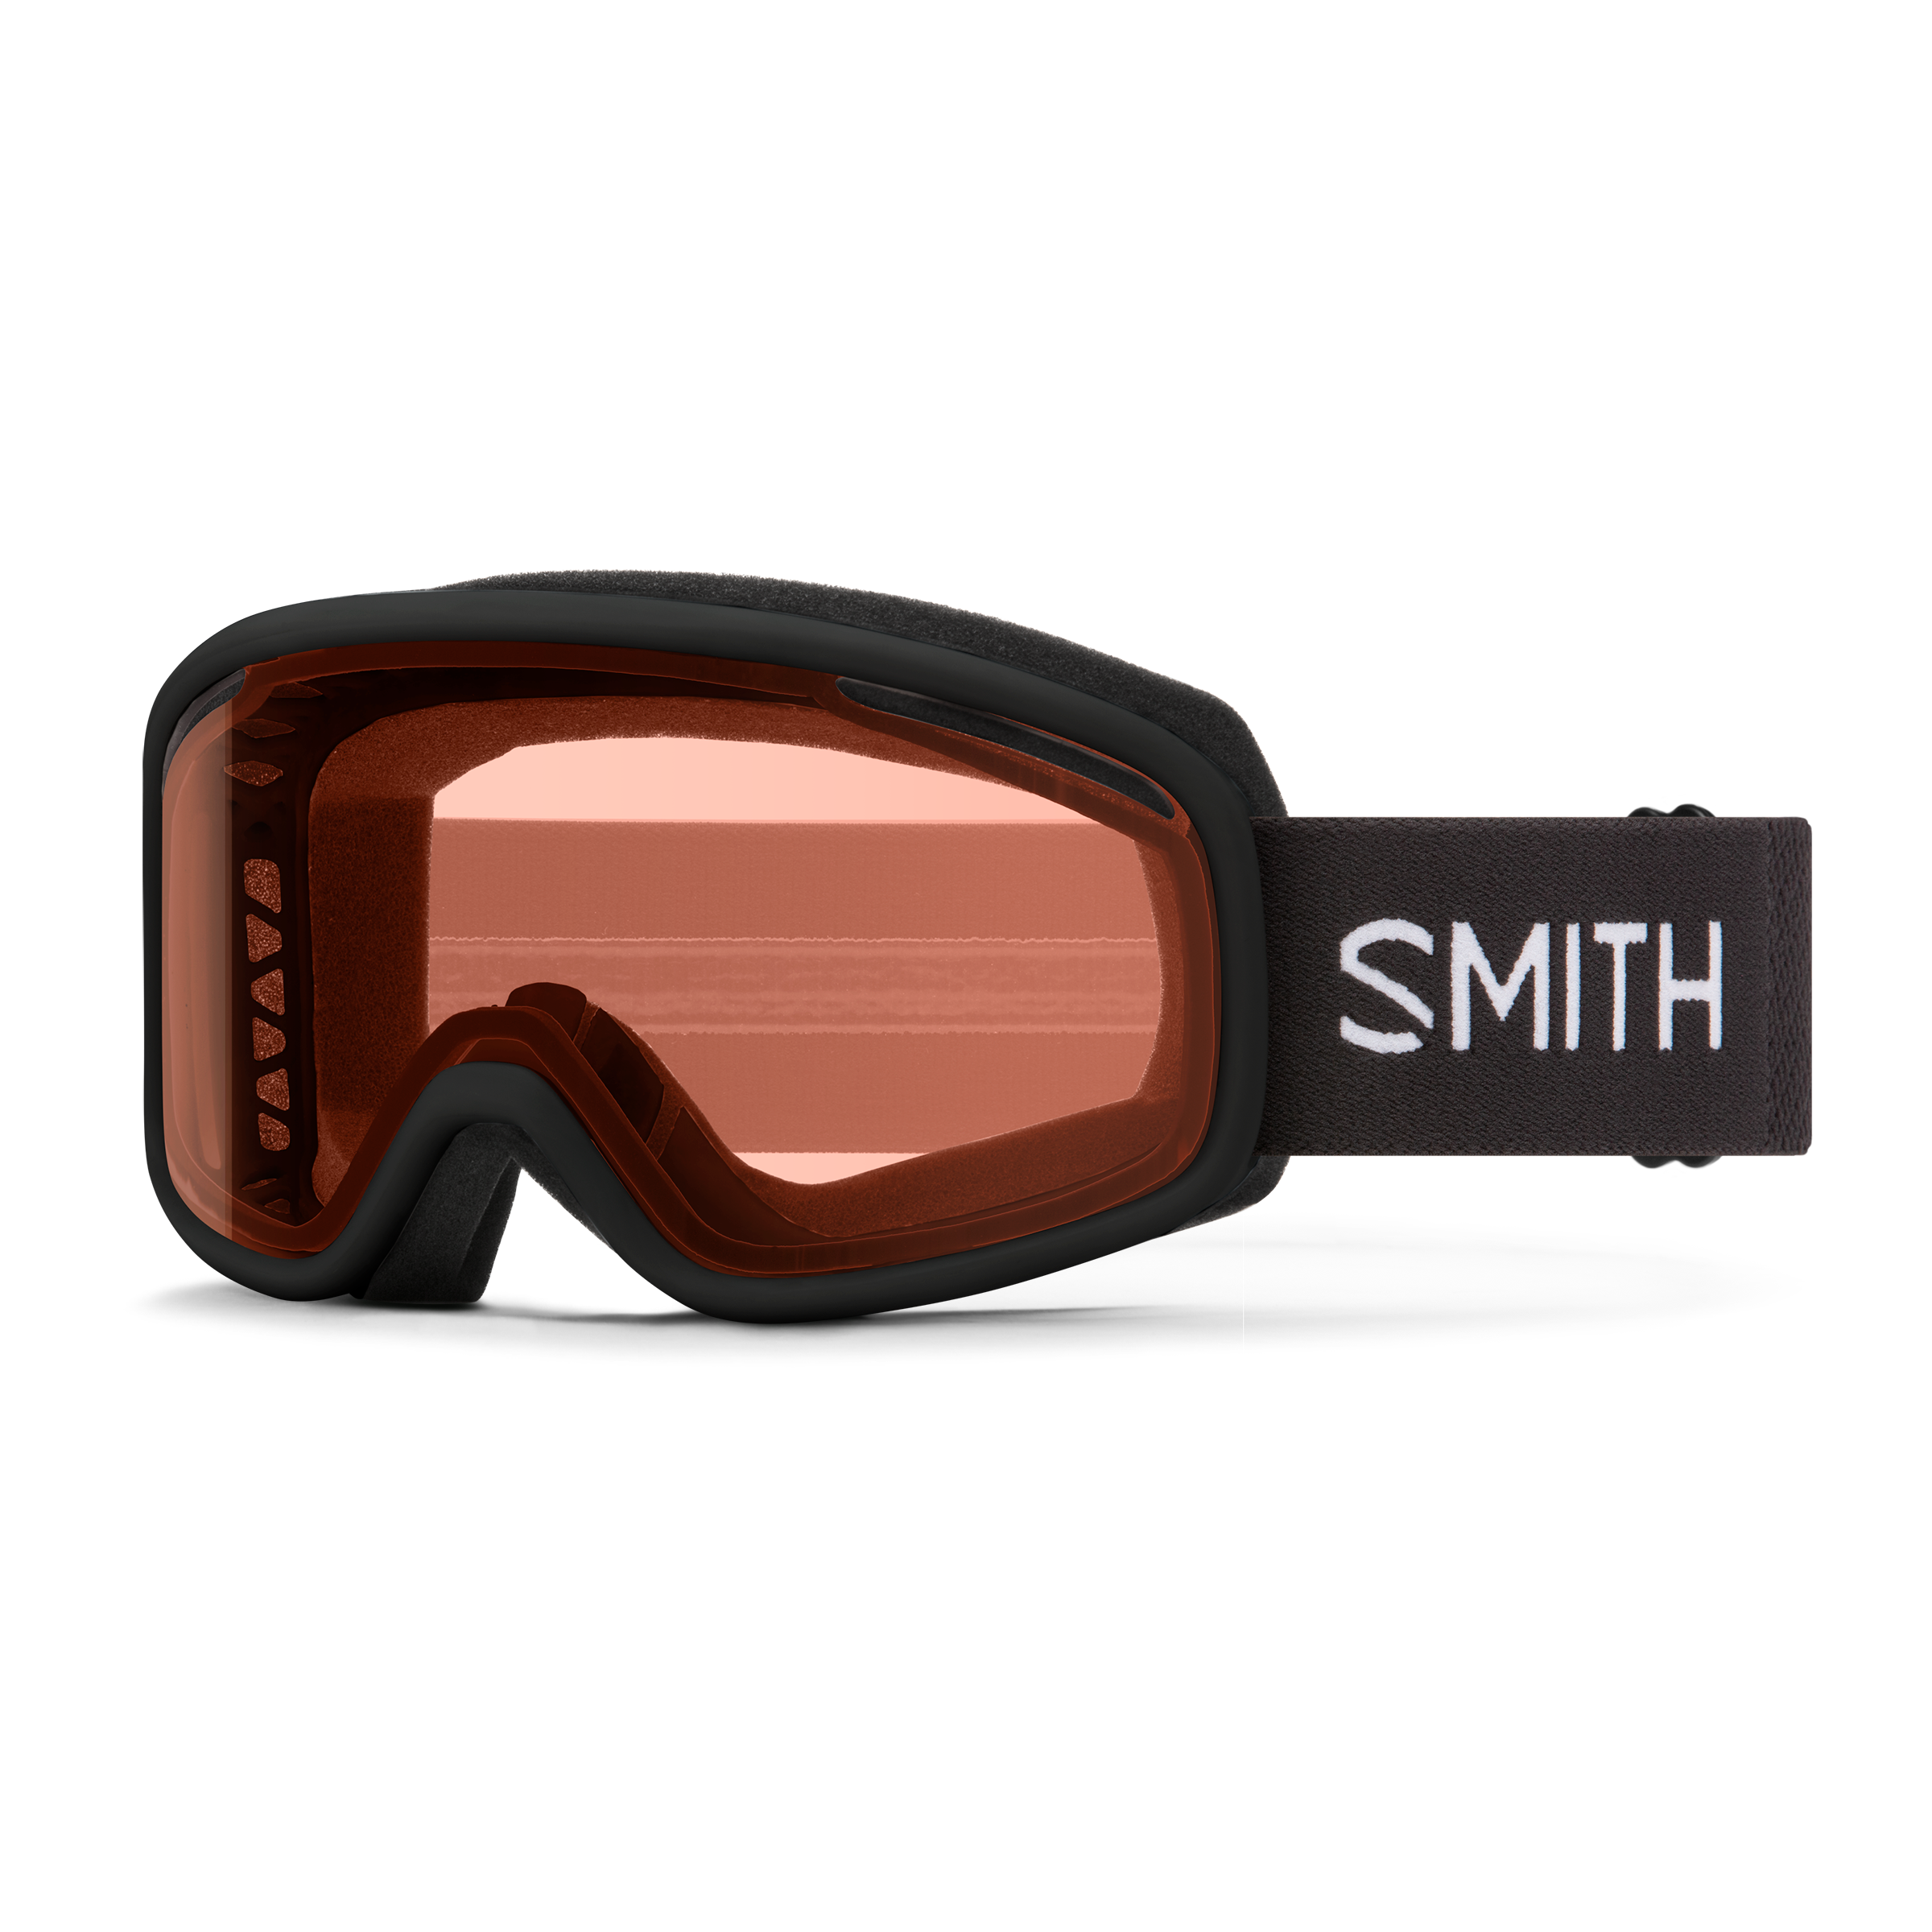 Smith Optics Range Snow Goggles Black with RC36